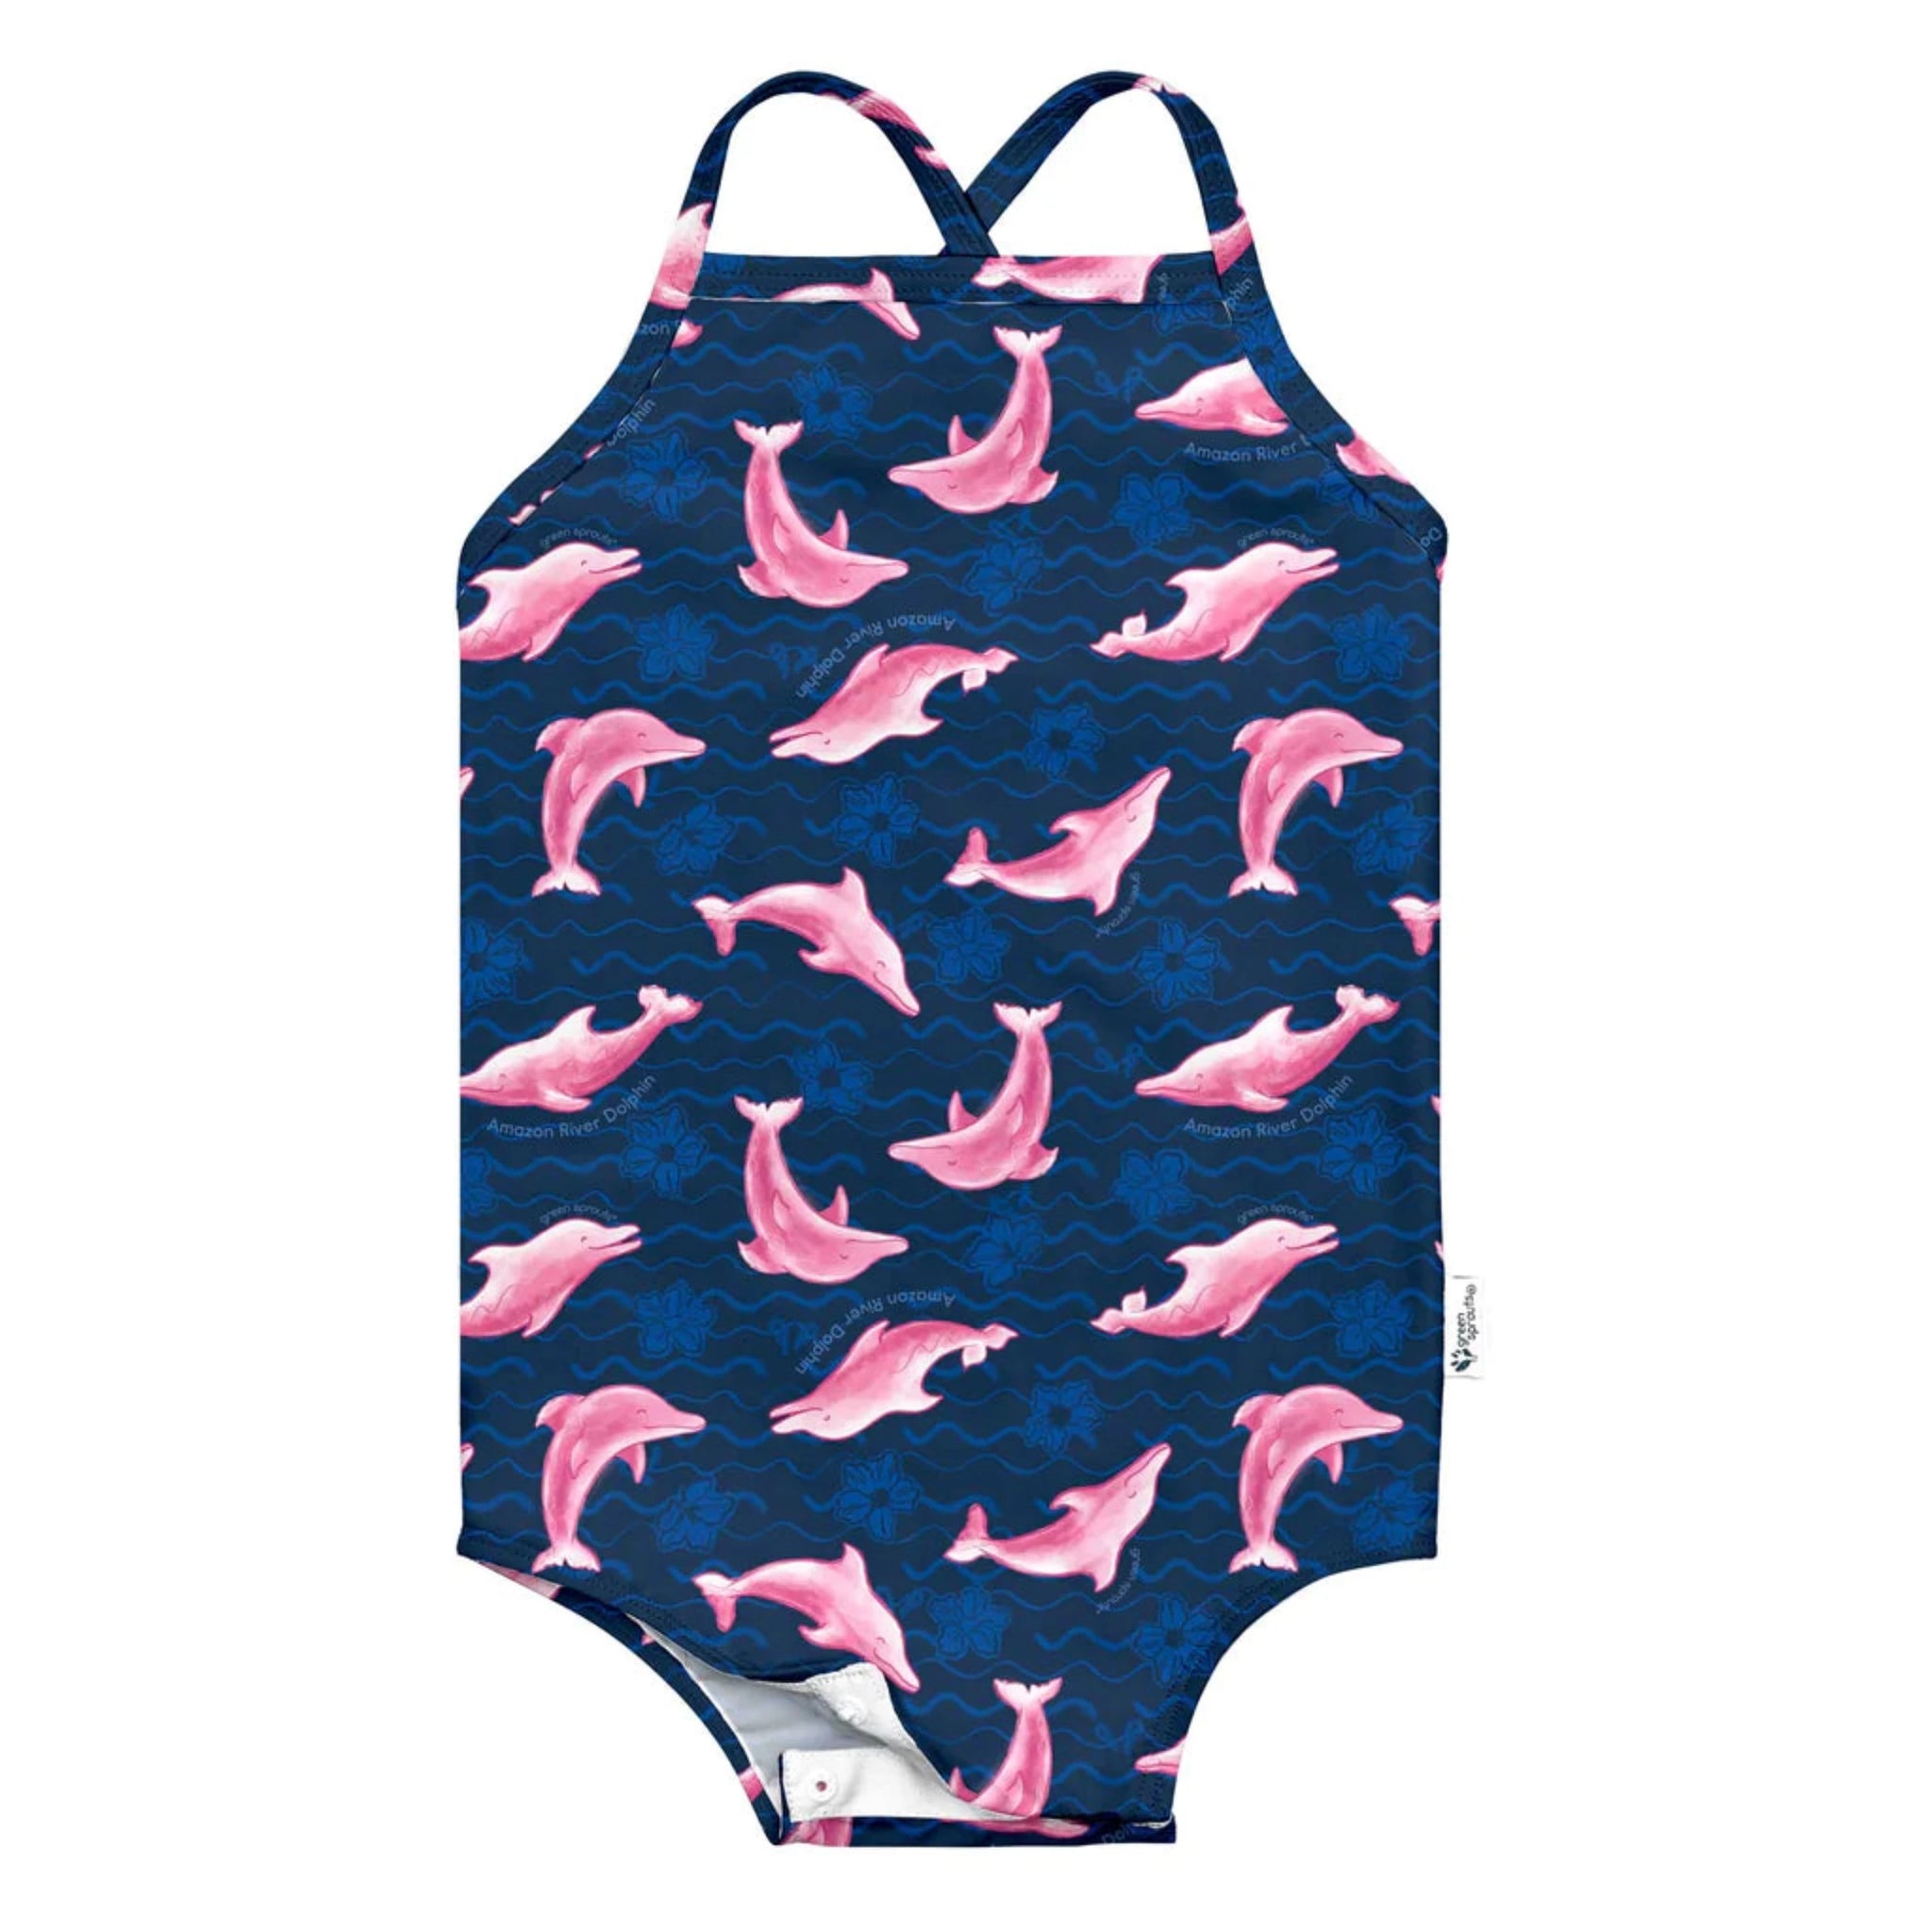 Vestido de baño con botones estampado delfines navy